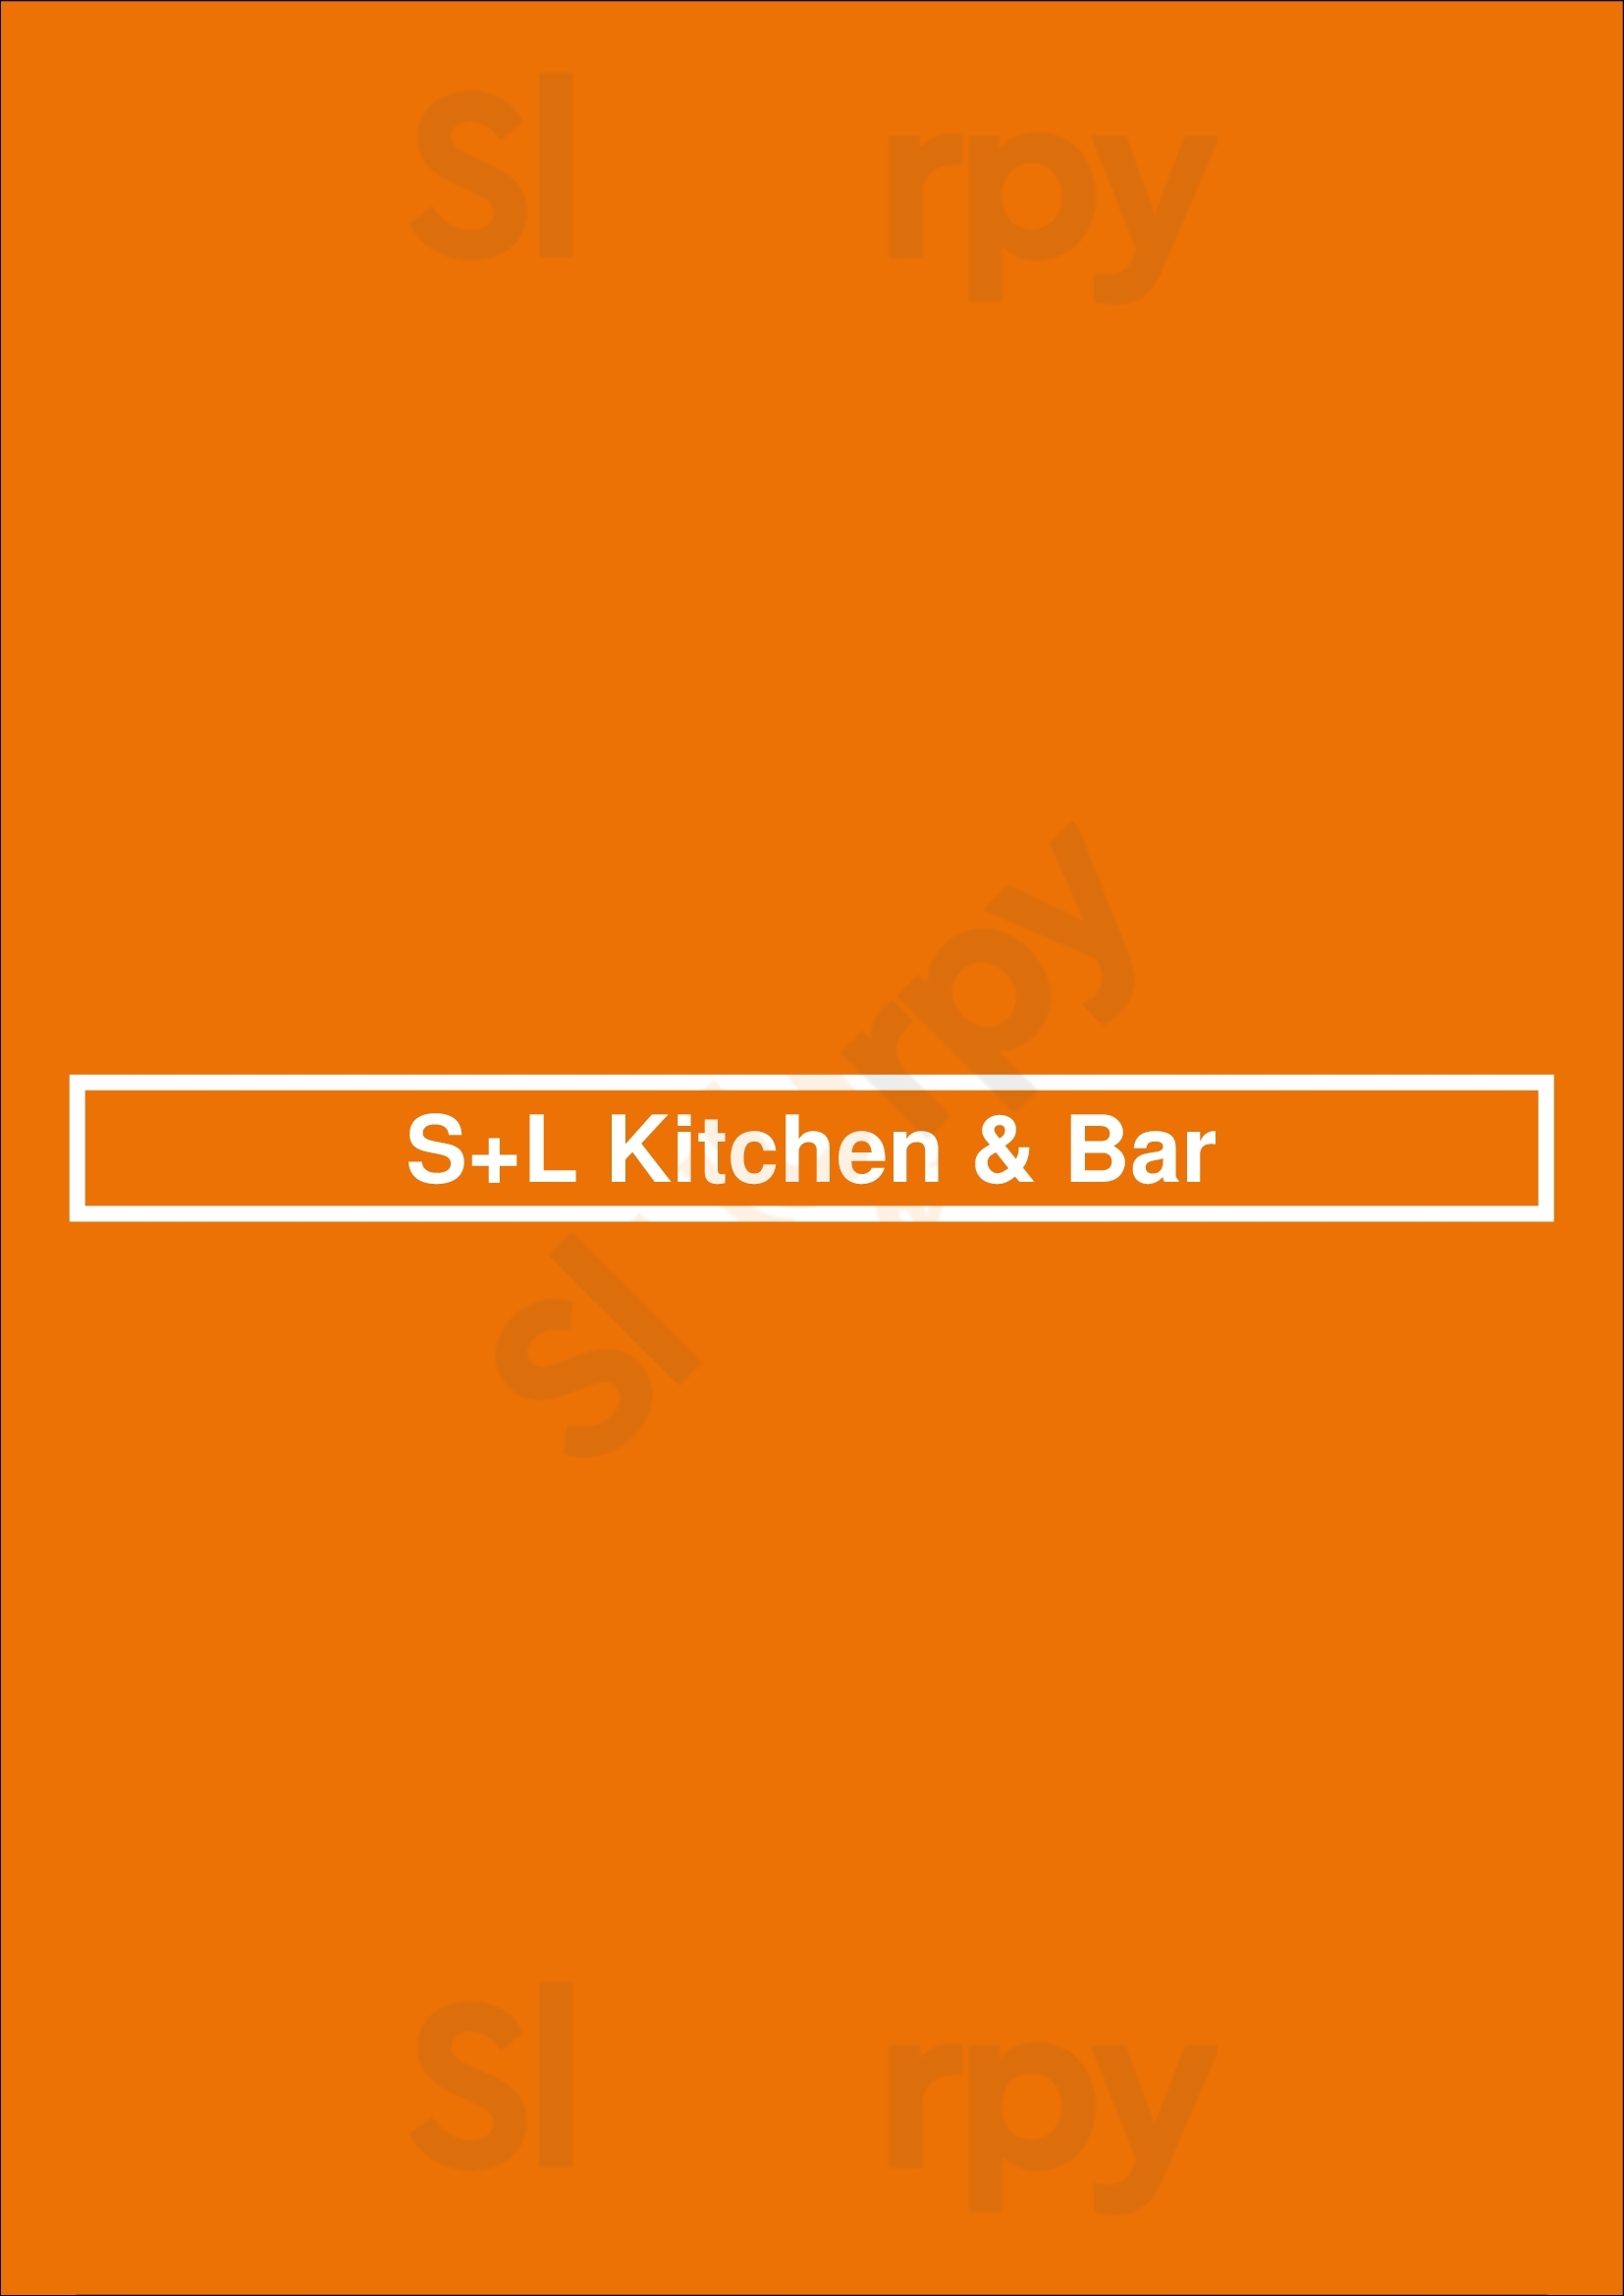 S+l Kitchen & Bar Surrey Menu - 1